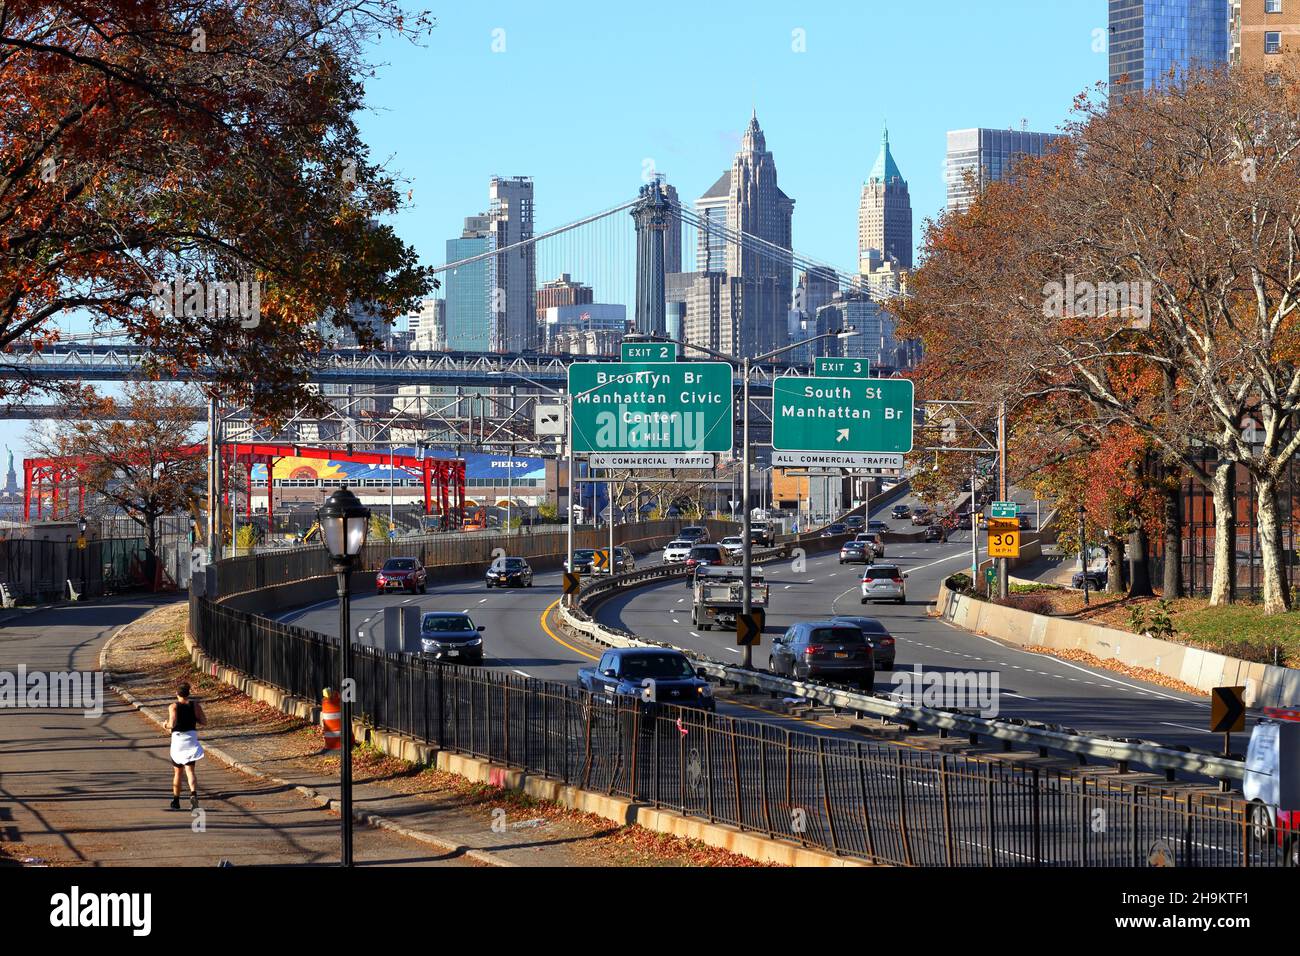 Un jogging sur l'East River Greenway le long de FDR Drive avec signalisation indiquant le centre-ville de Manhattan.Statue de la liberté à gauche 23 novembre 2021 Banque D'Images